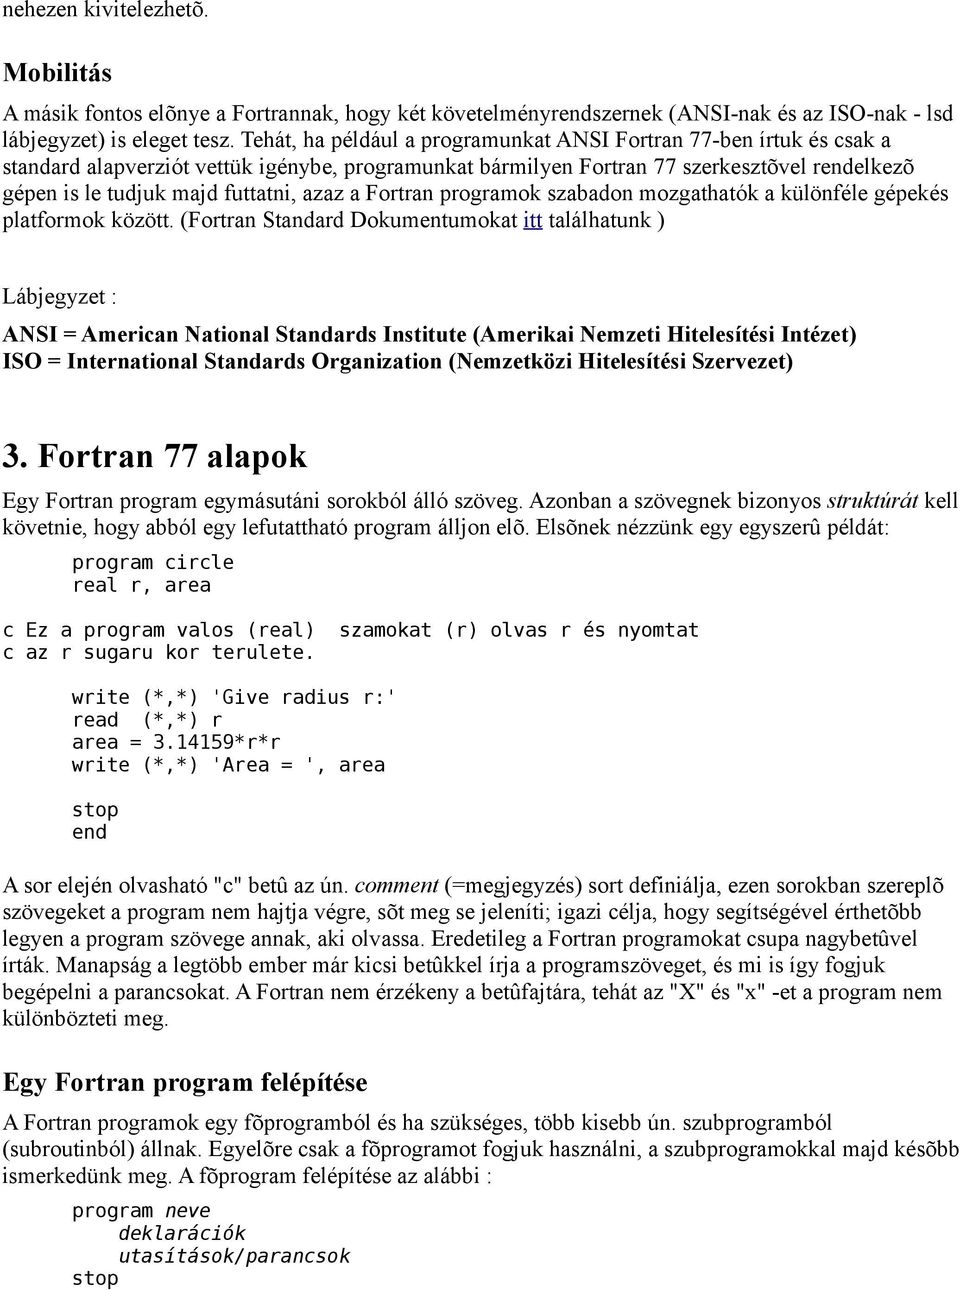 azaz a Fortran programok szabadon mozgathatók a különféle gépekés platformok között.